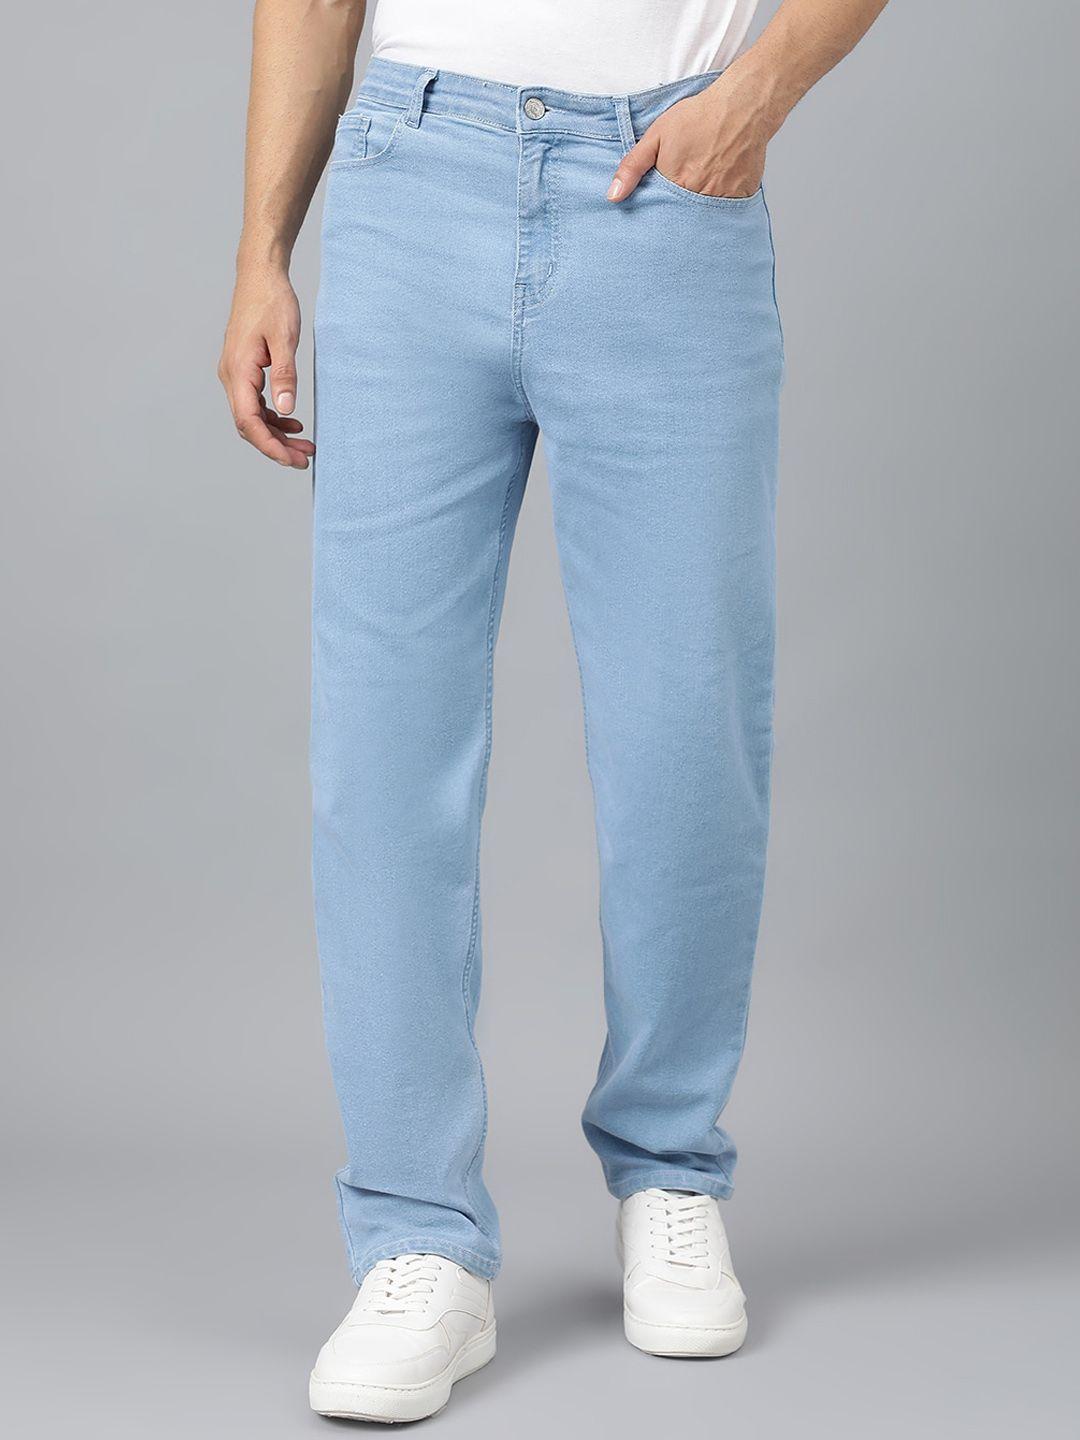 kotty-men-blue-jean-fit-low-rise-stretchable-jeans